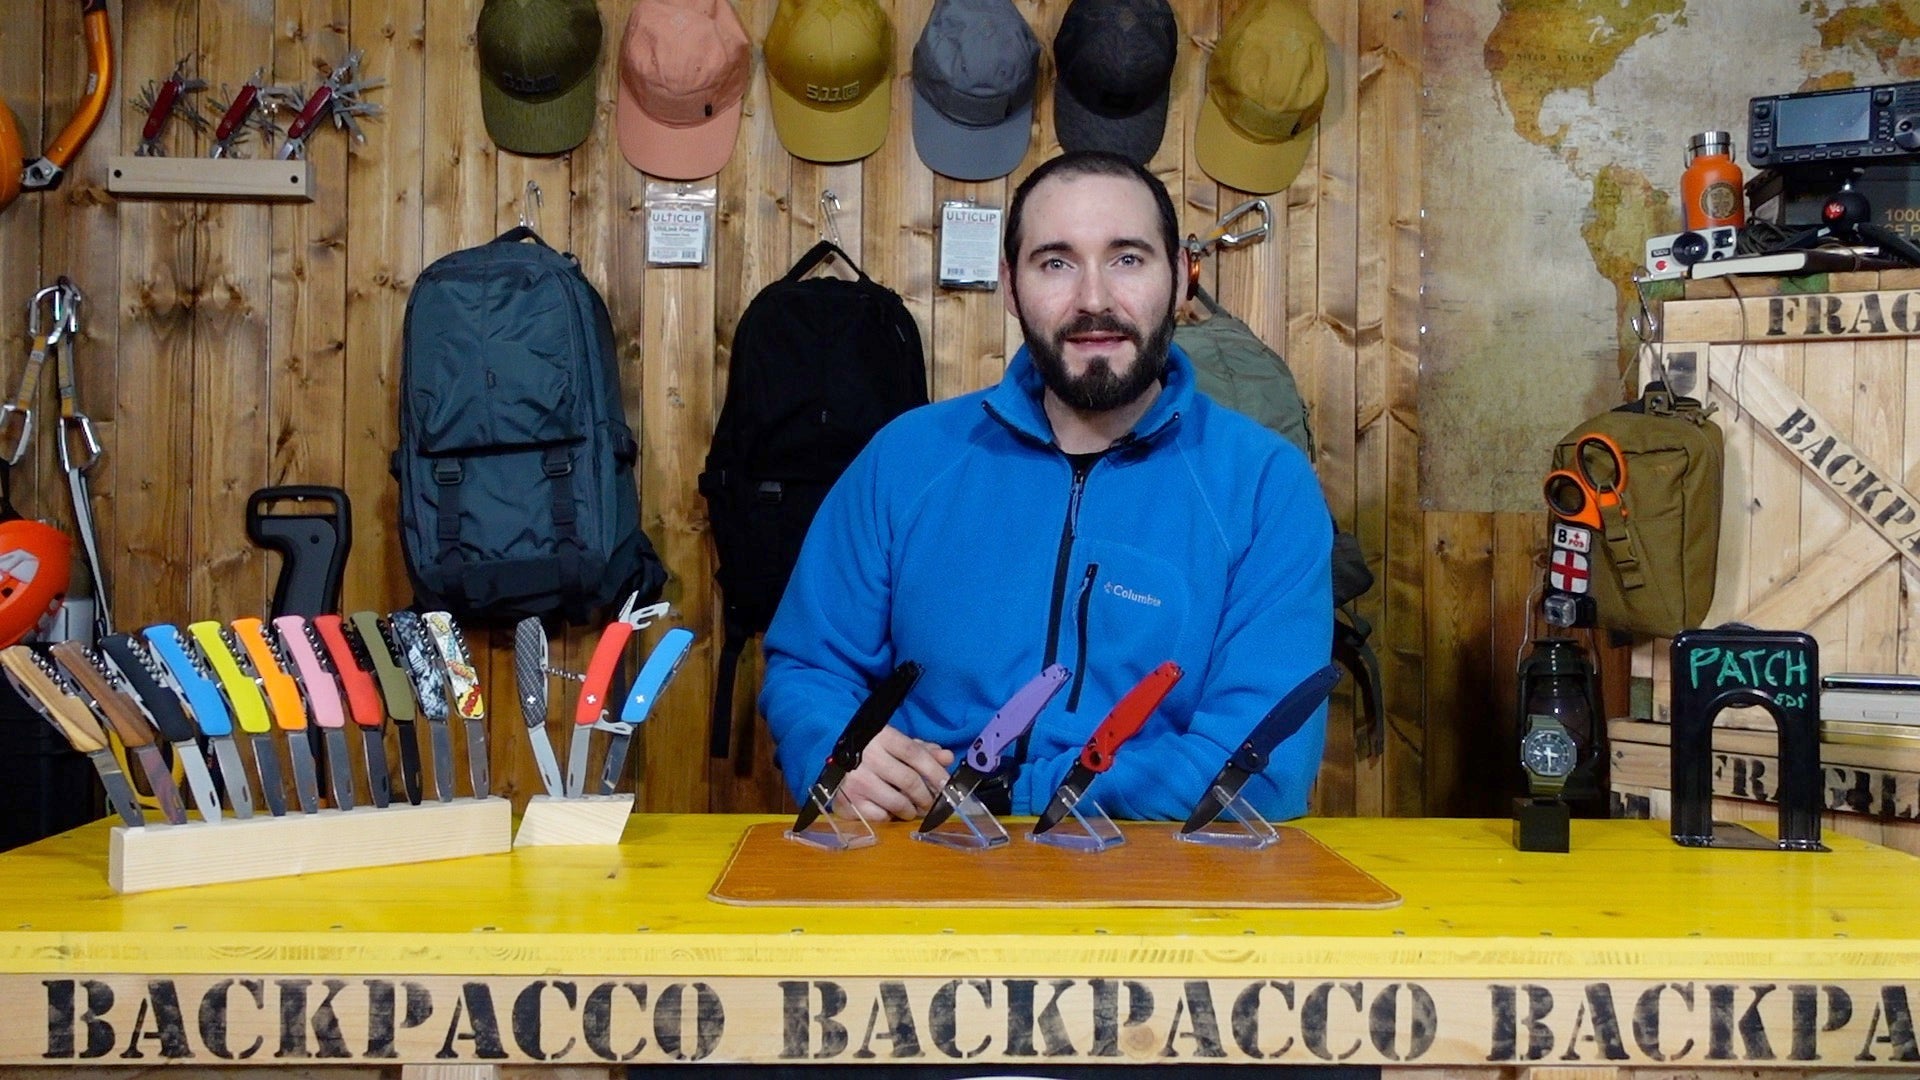 Paolo di backpacco spiega l'A100 di Acta Non Verba